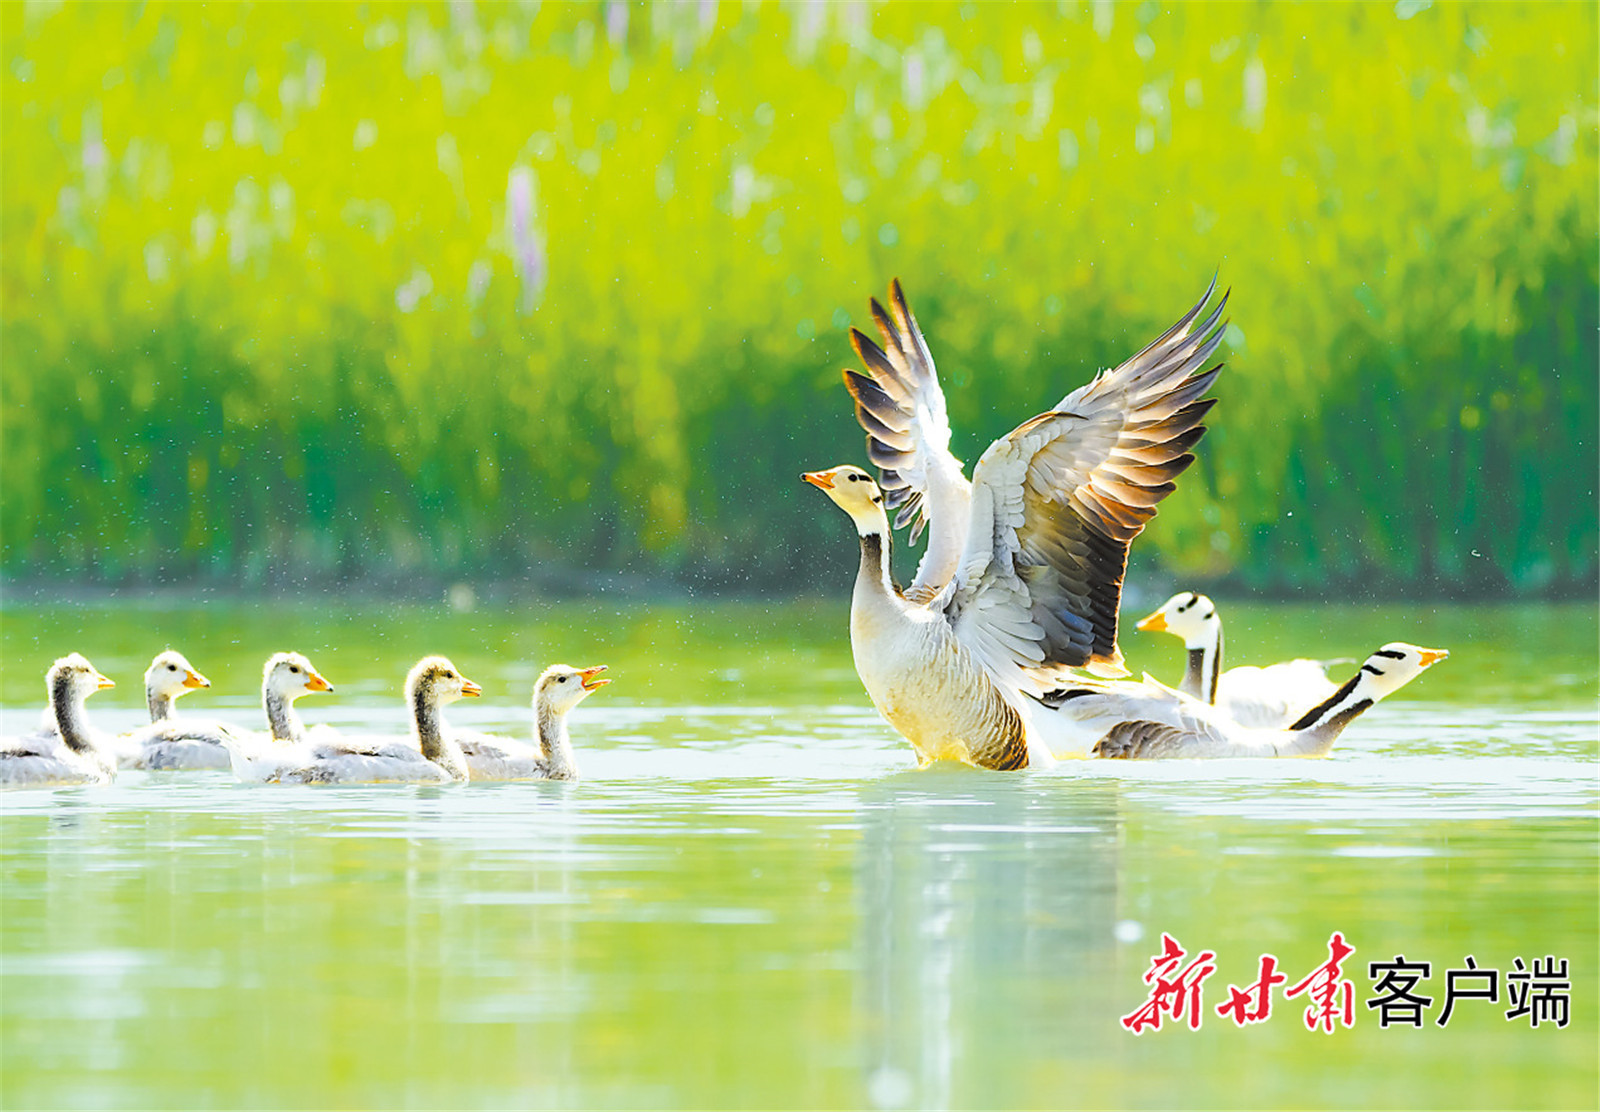 张掖市黑河流域成为候鸟栖息繁殖的乐园 马有德